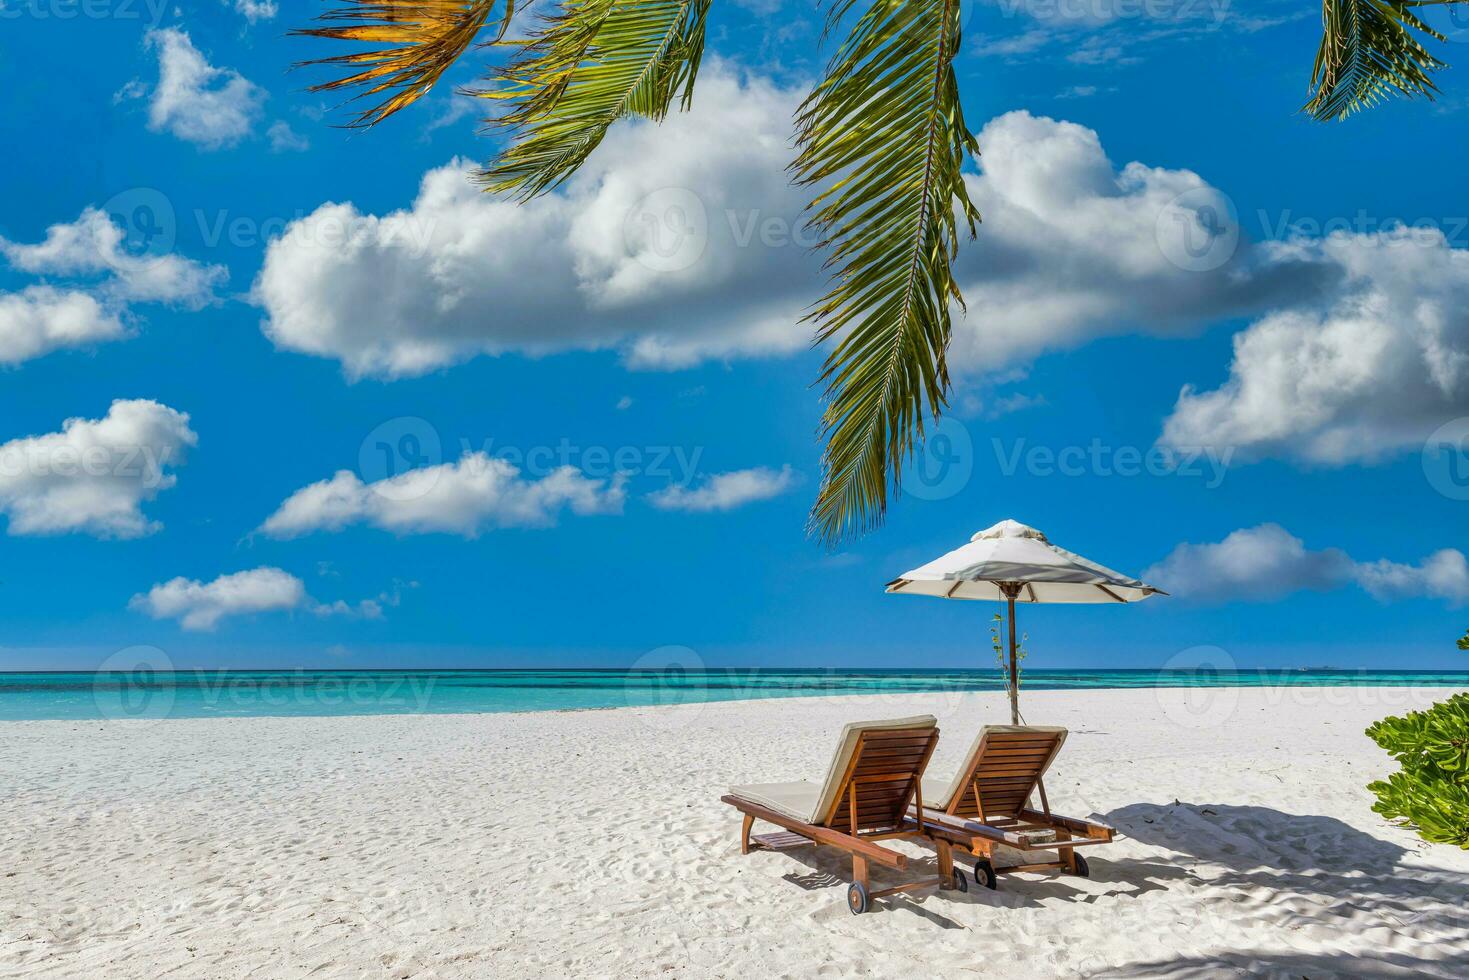 tropicale spiaggia natura come estate paesaggio con coppia sedie, letti sotto palma alberi, calma mare cielo per spiaggia. lusso viaggio paesaggio, bellissimo luna di miele destinazione per vacanza vacanza. spiaggia costa foto